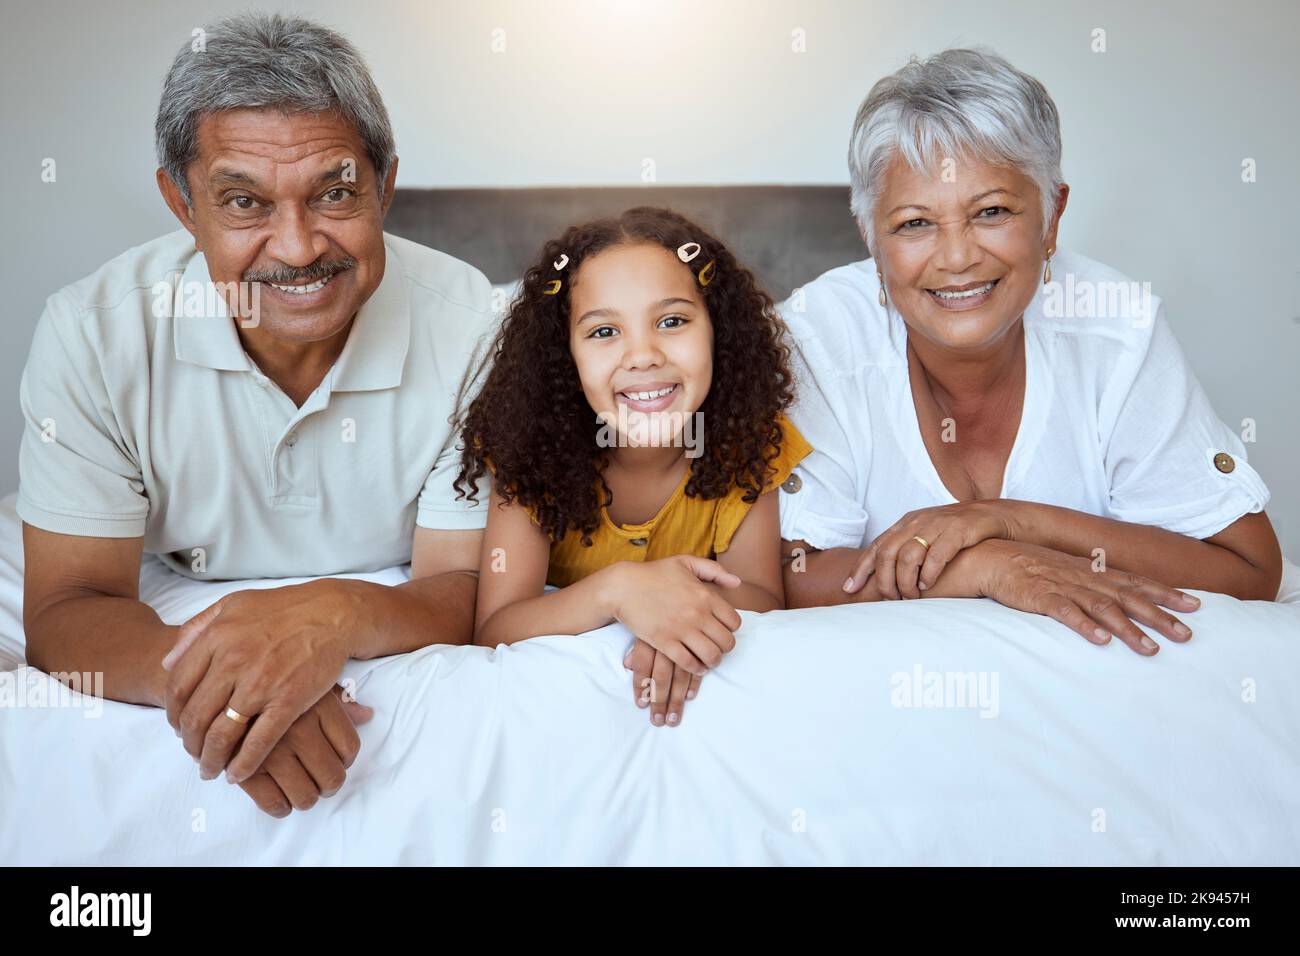 Glücklich, Großeltern und Kind liegen auf dem Bett mit einem Lächeln für die Familie zu verbinden, Ruhestand und zu Hause entspannen. Porträt von Mädchen, Oma und Opa Stockfoto